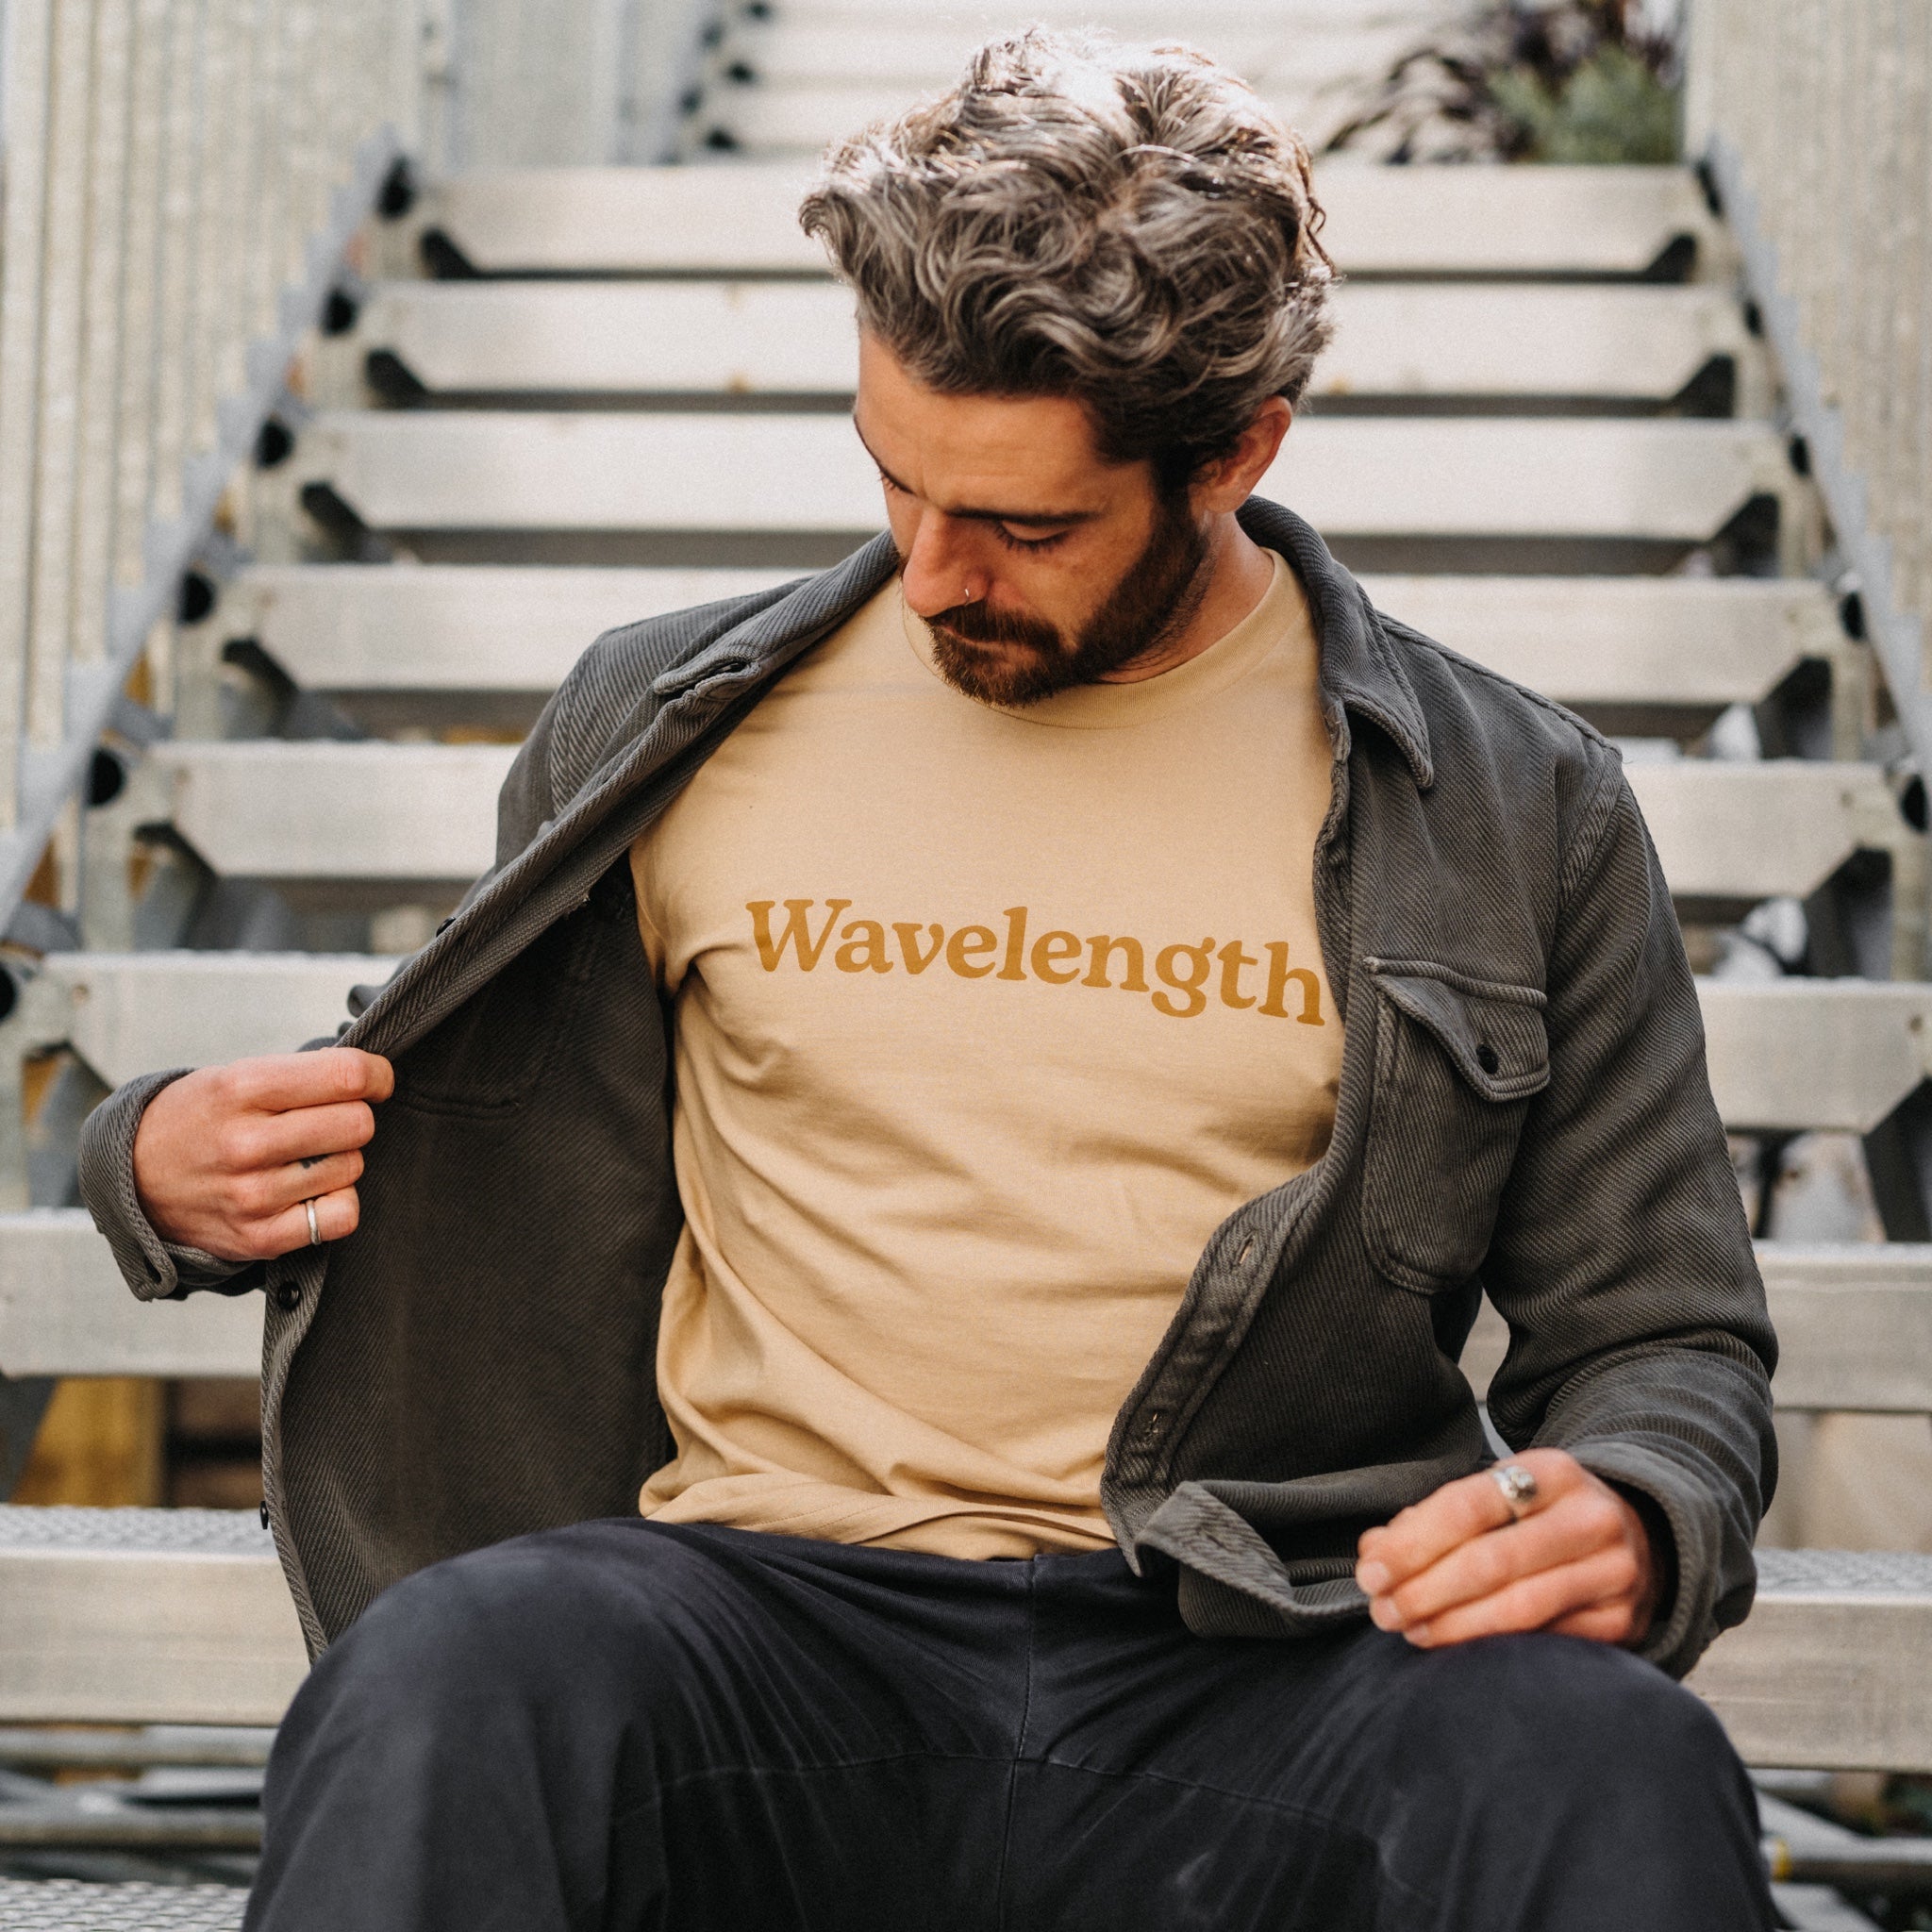 Wavelength Far Out T-shirt - Sand